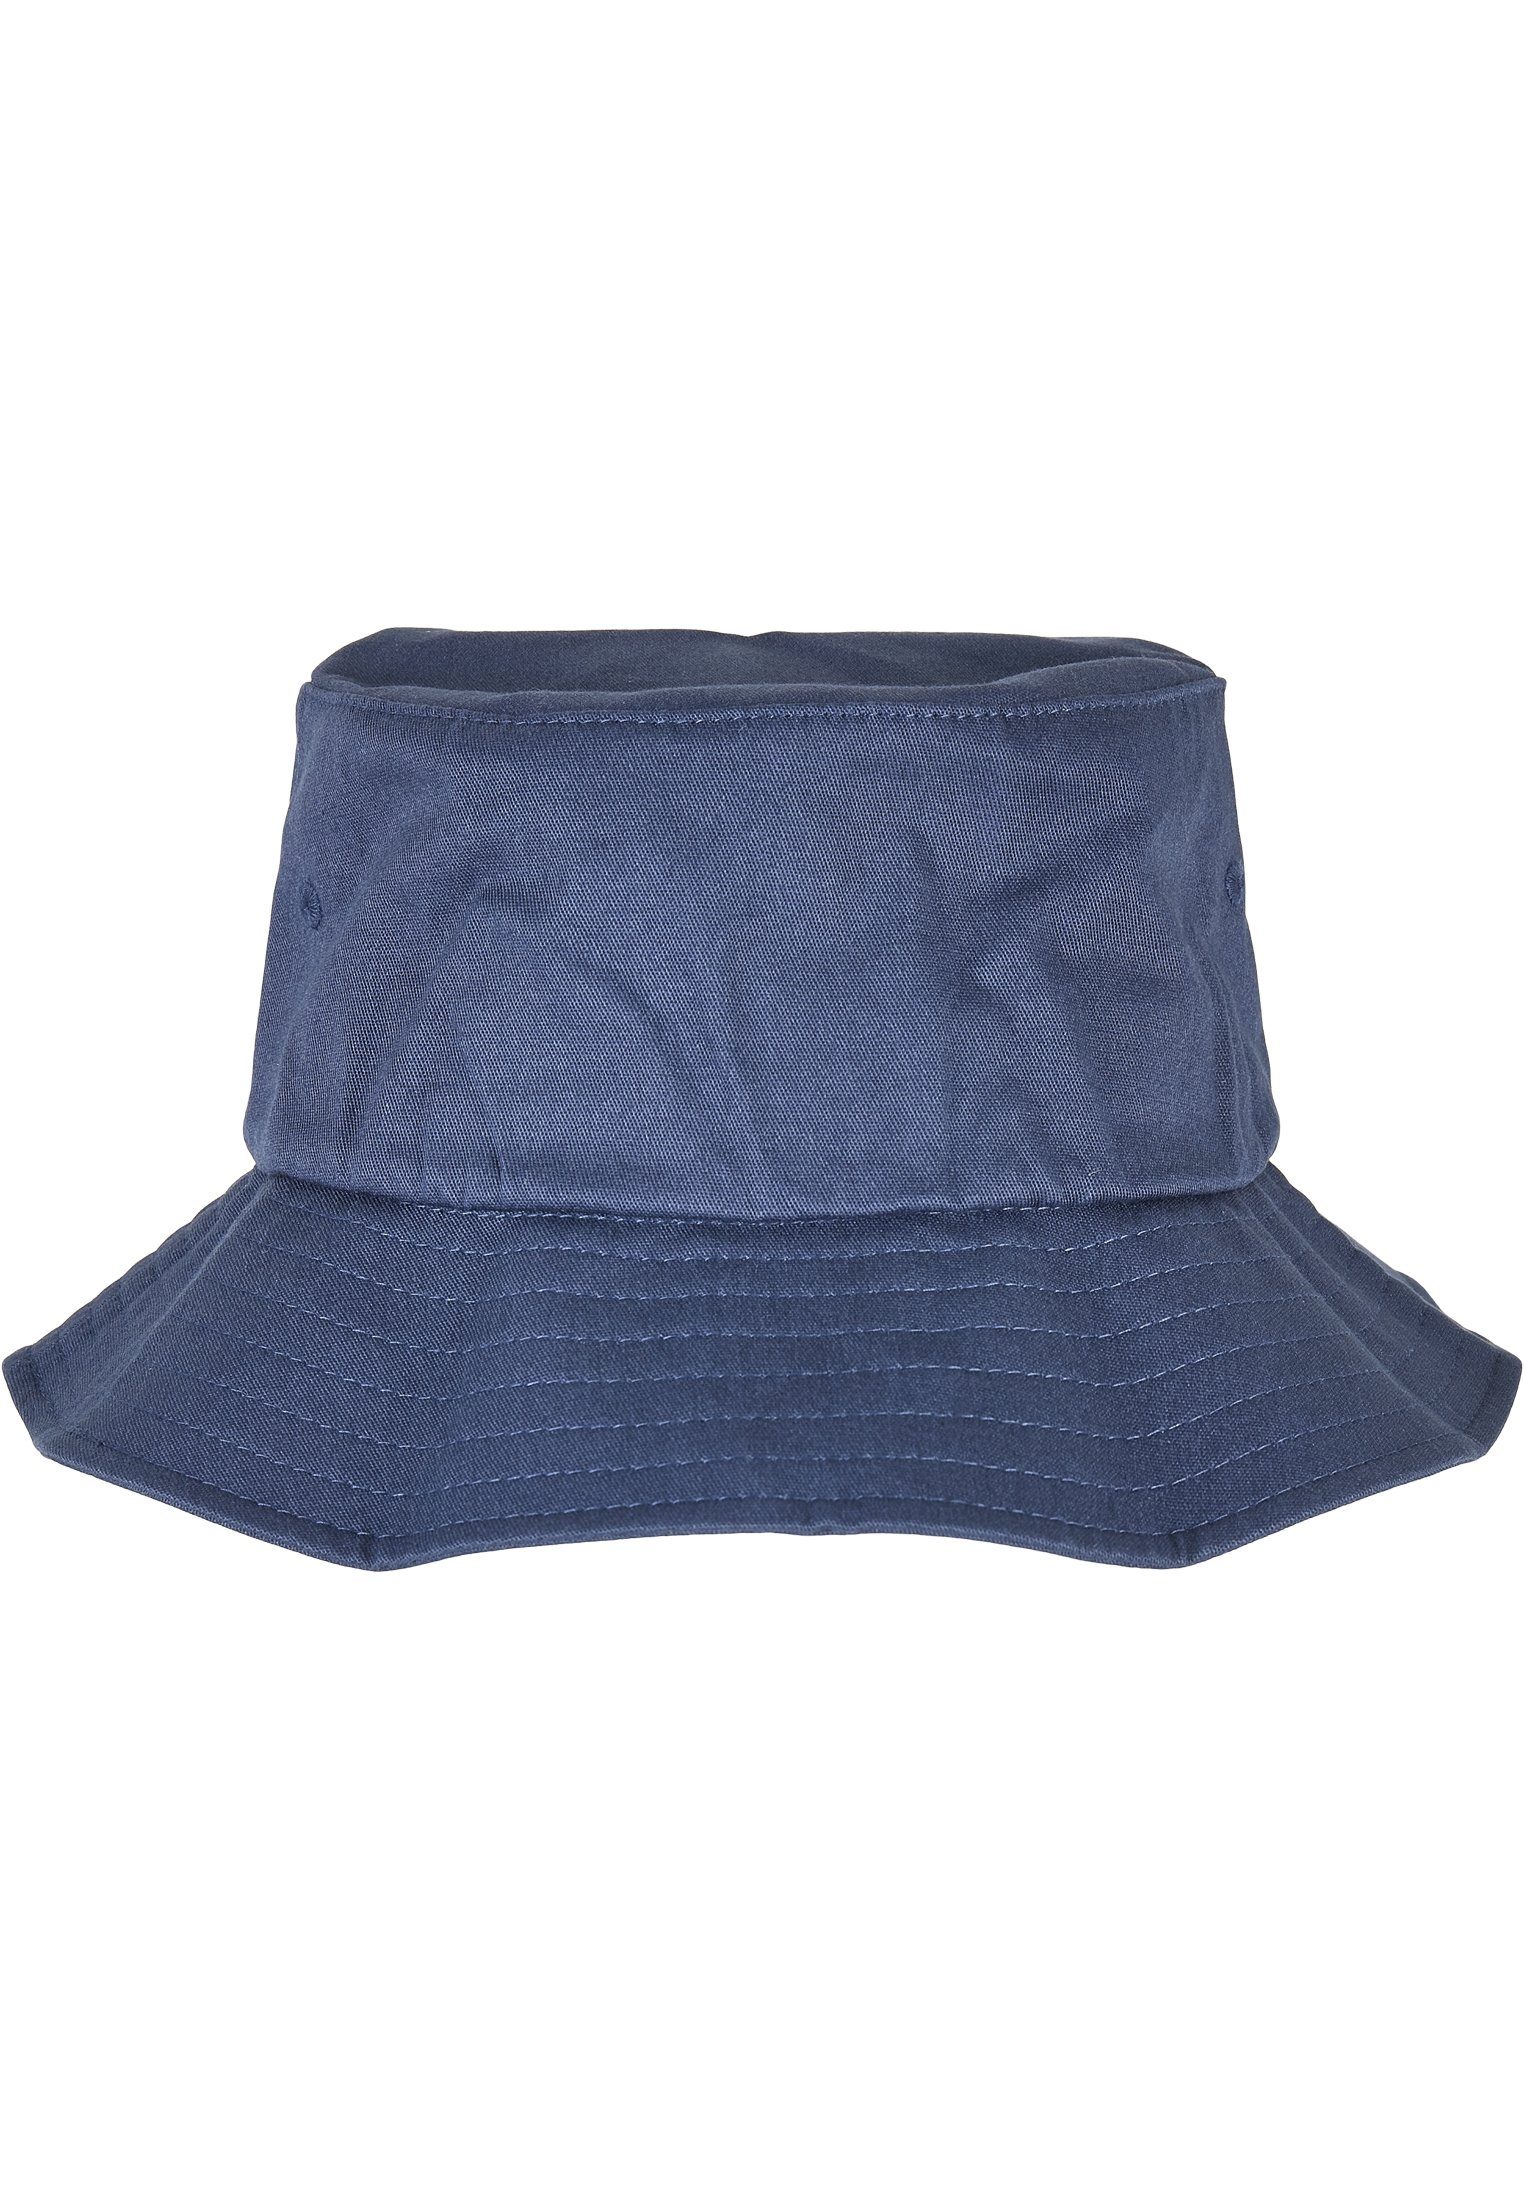 MisterTee Flex Accessoires Hat Bucket Liner Cap One